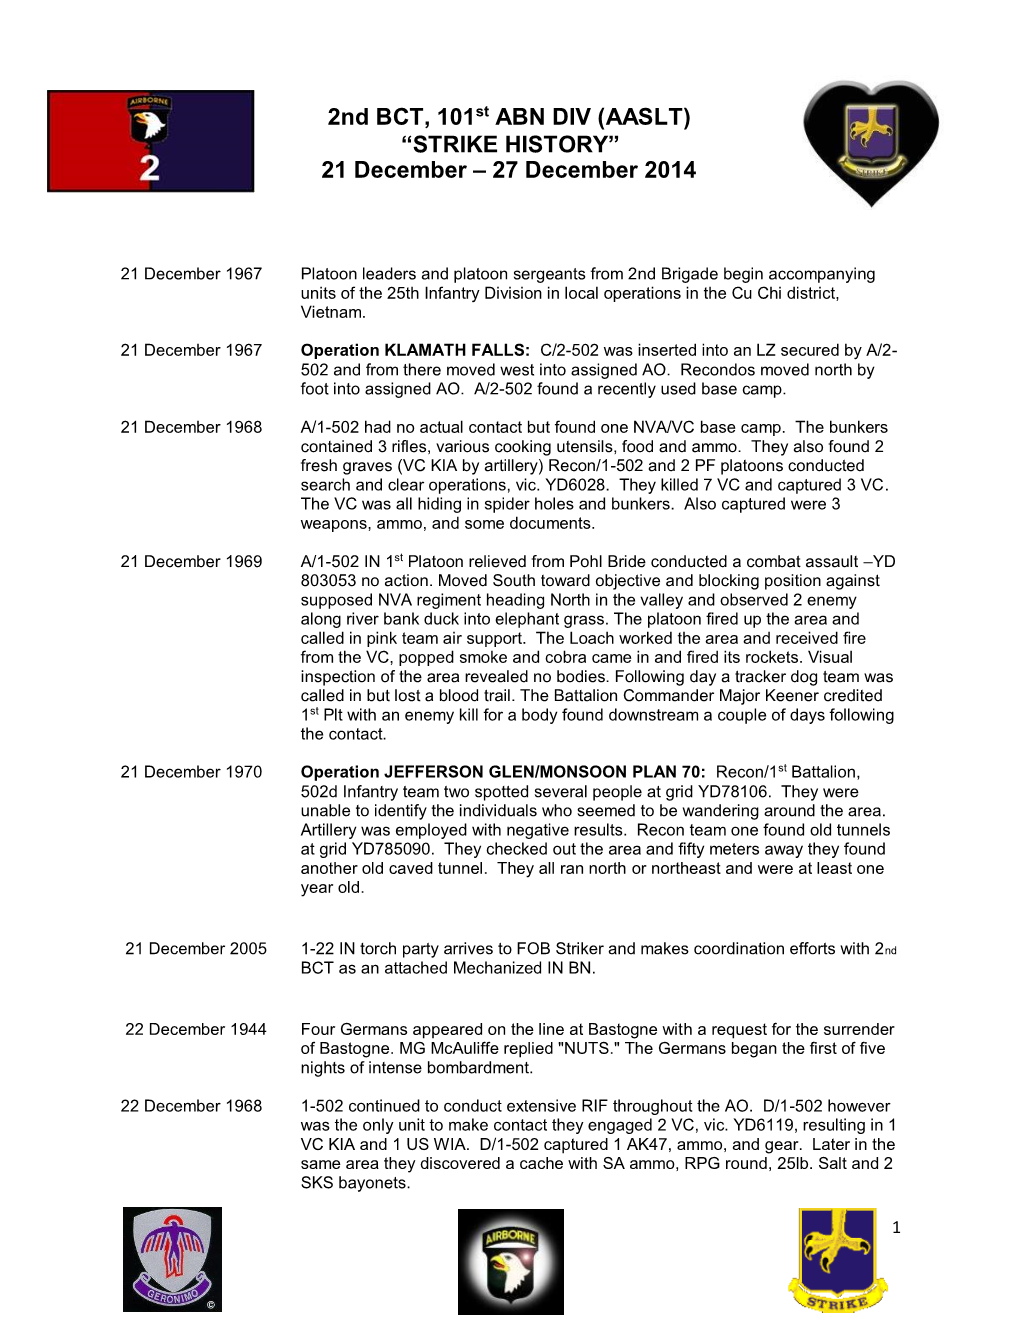 2Nd BCT, 101St ABN DIV (AASLT) “STRIKE HISTORY” 21 December – 27 December 2014